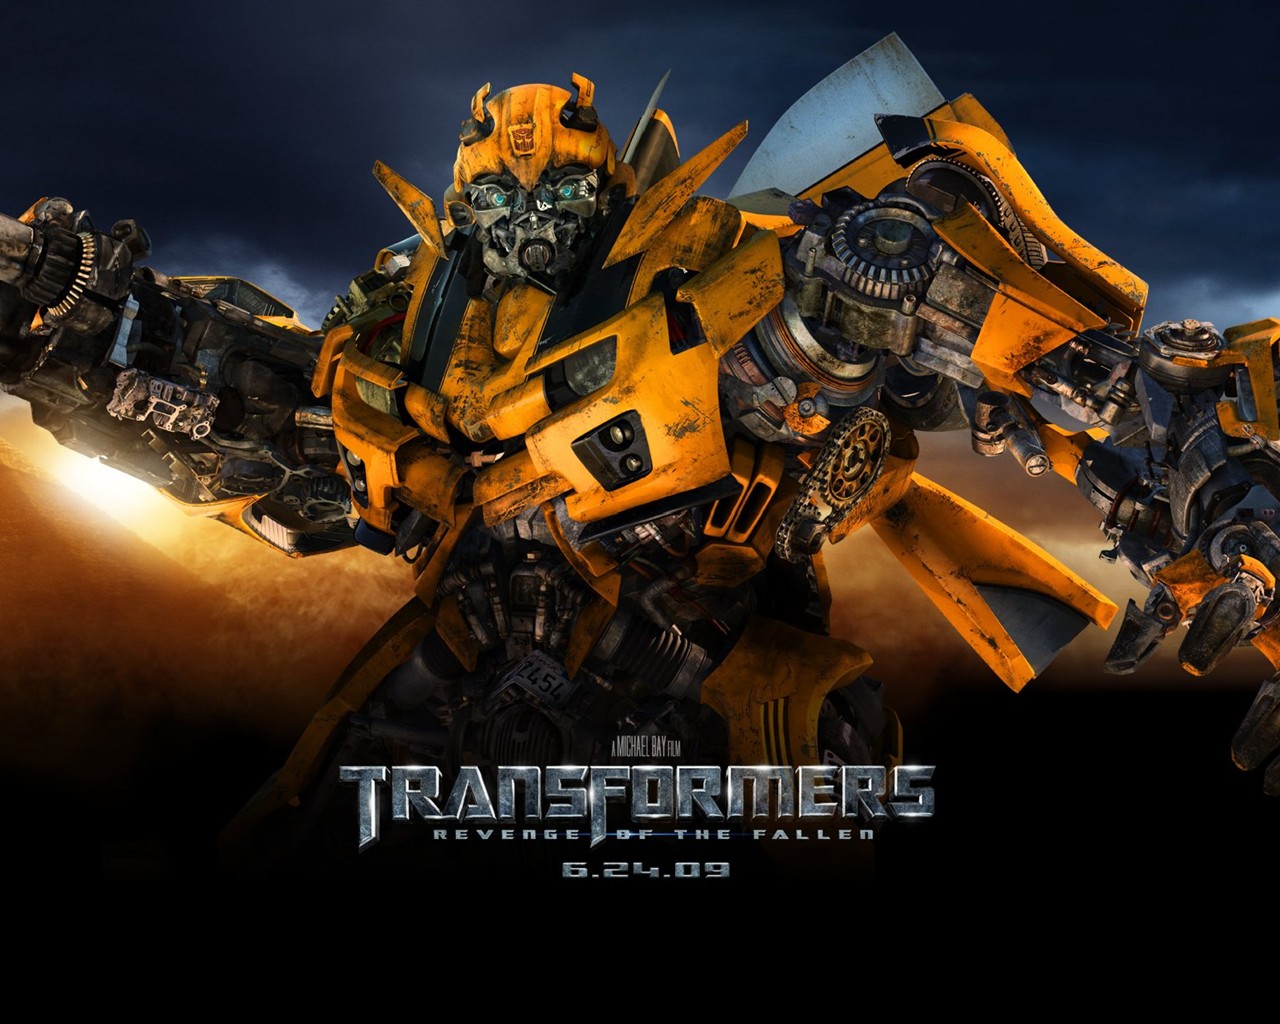 Transformers HD papel tapiz #5 - 1280x1024